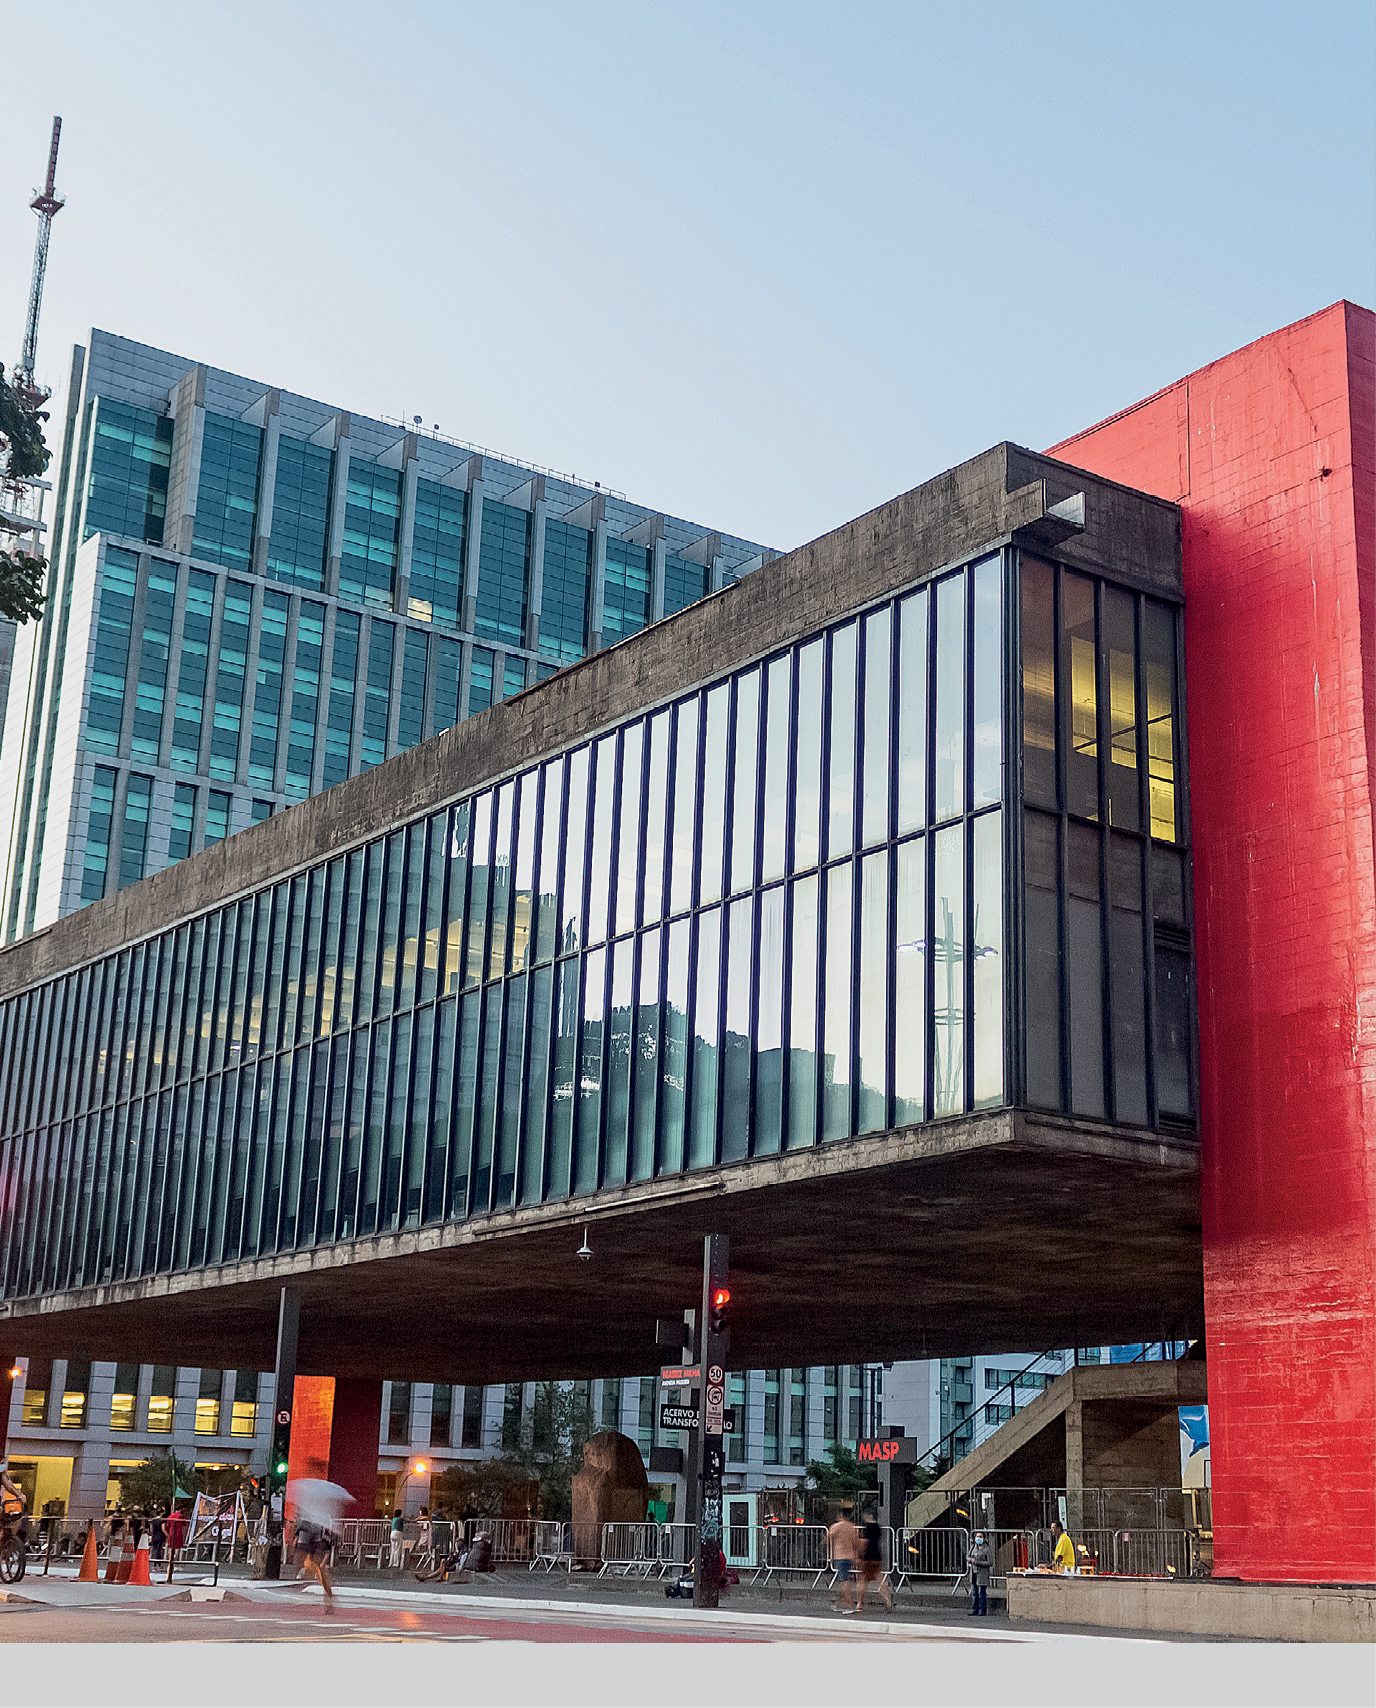 Fotografia. Museu de Arte de São Paulo. Um prédio cinza e vermelho em formato retangular na horizontal com janelas em vidro transparente.